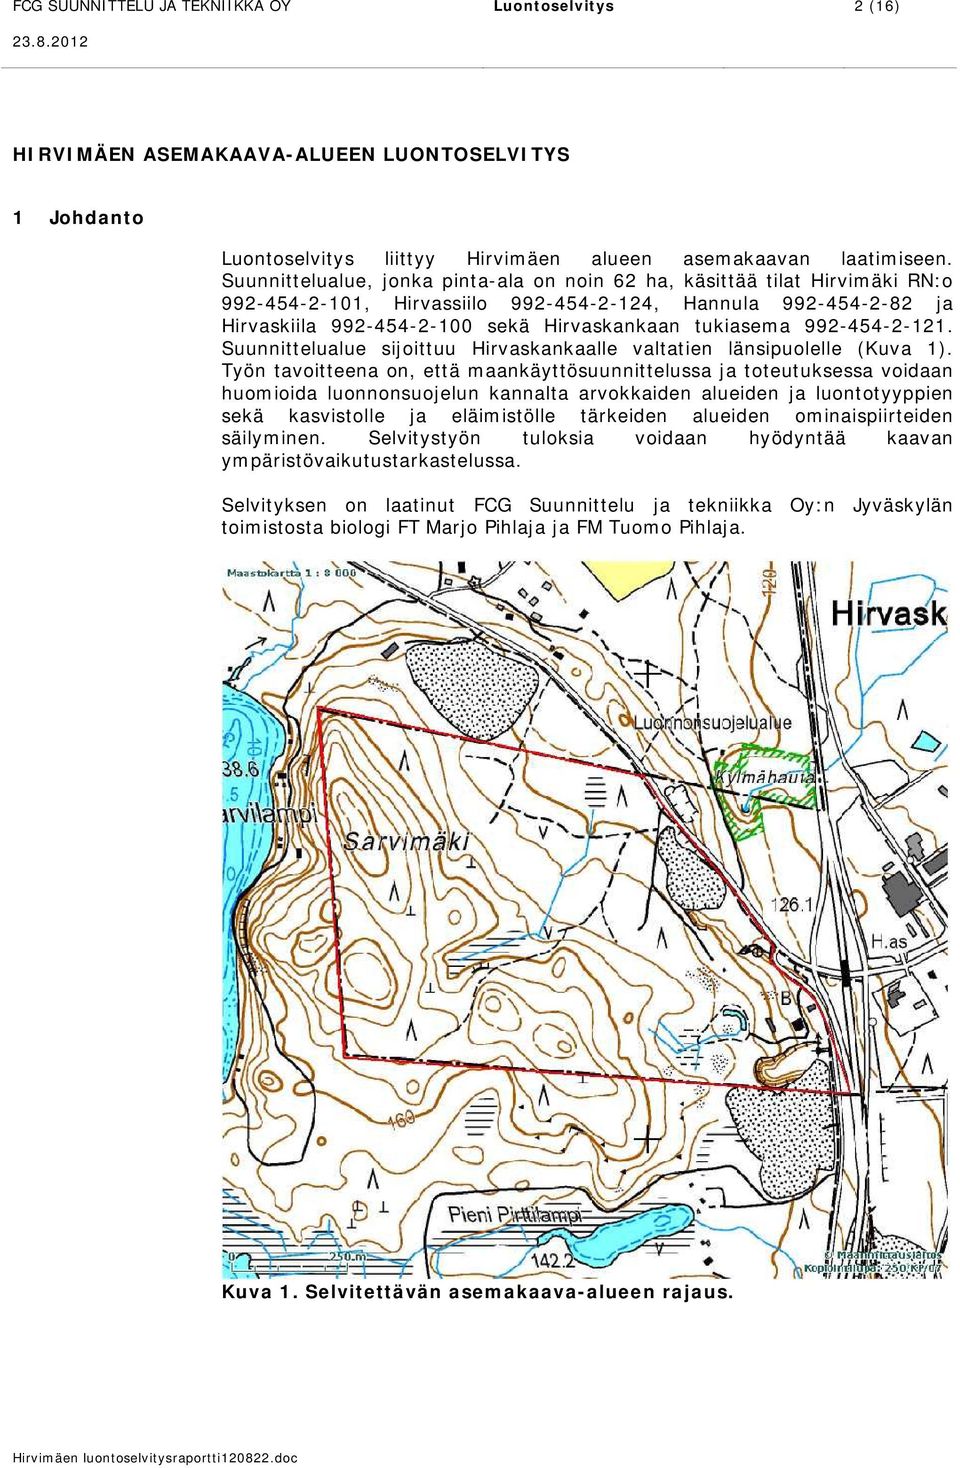 992-454-2-121. Suunnittelualue sijoittuu Hirvaskankaalle valtatien länsipuolelle (Kuva 1).